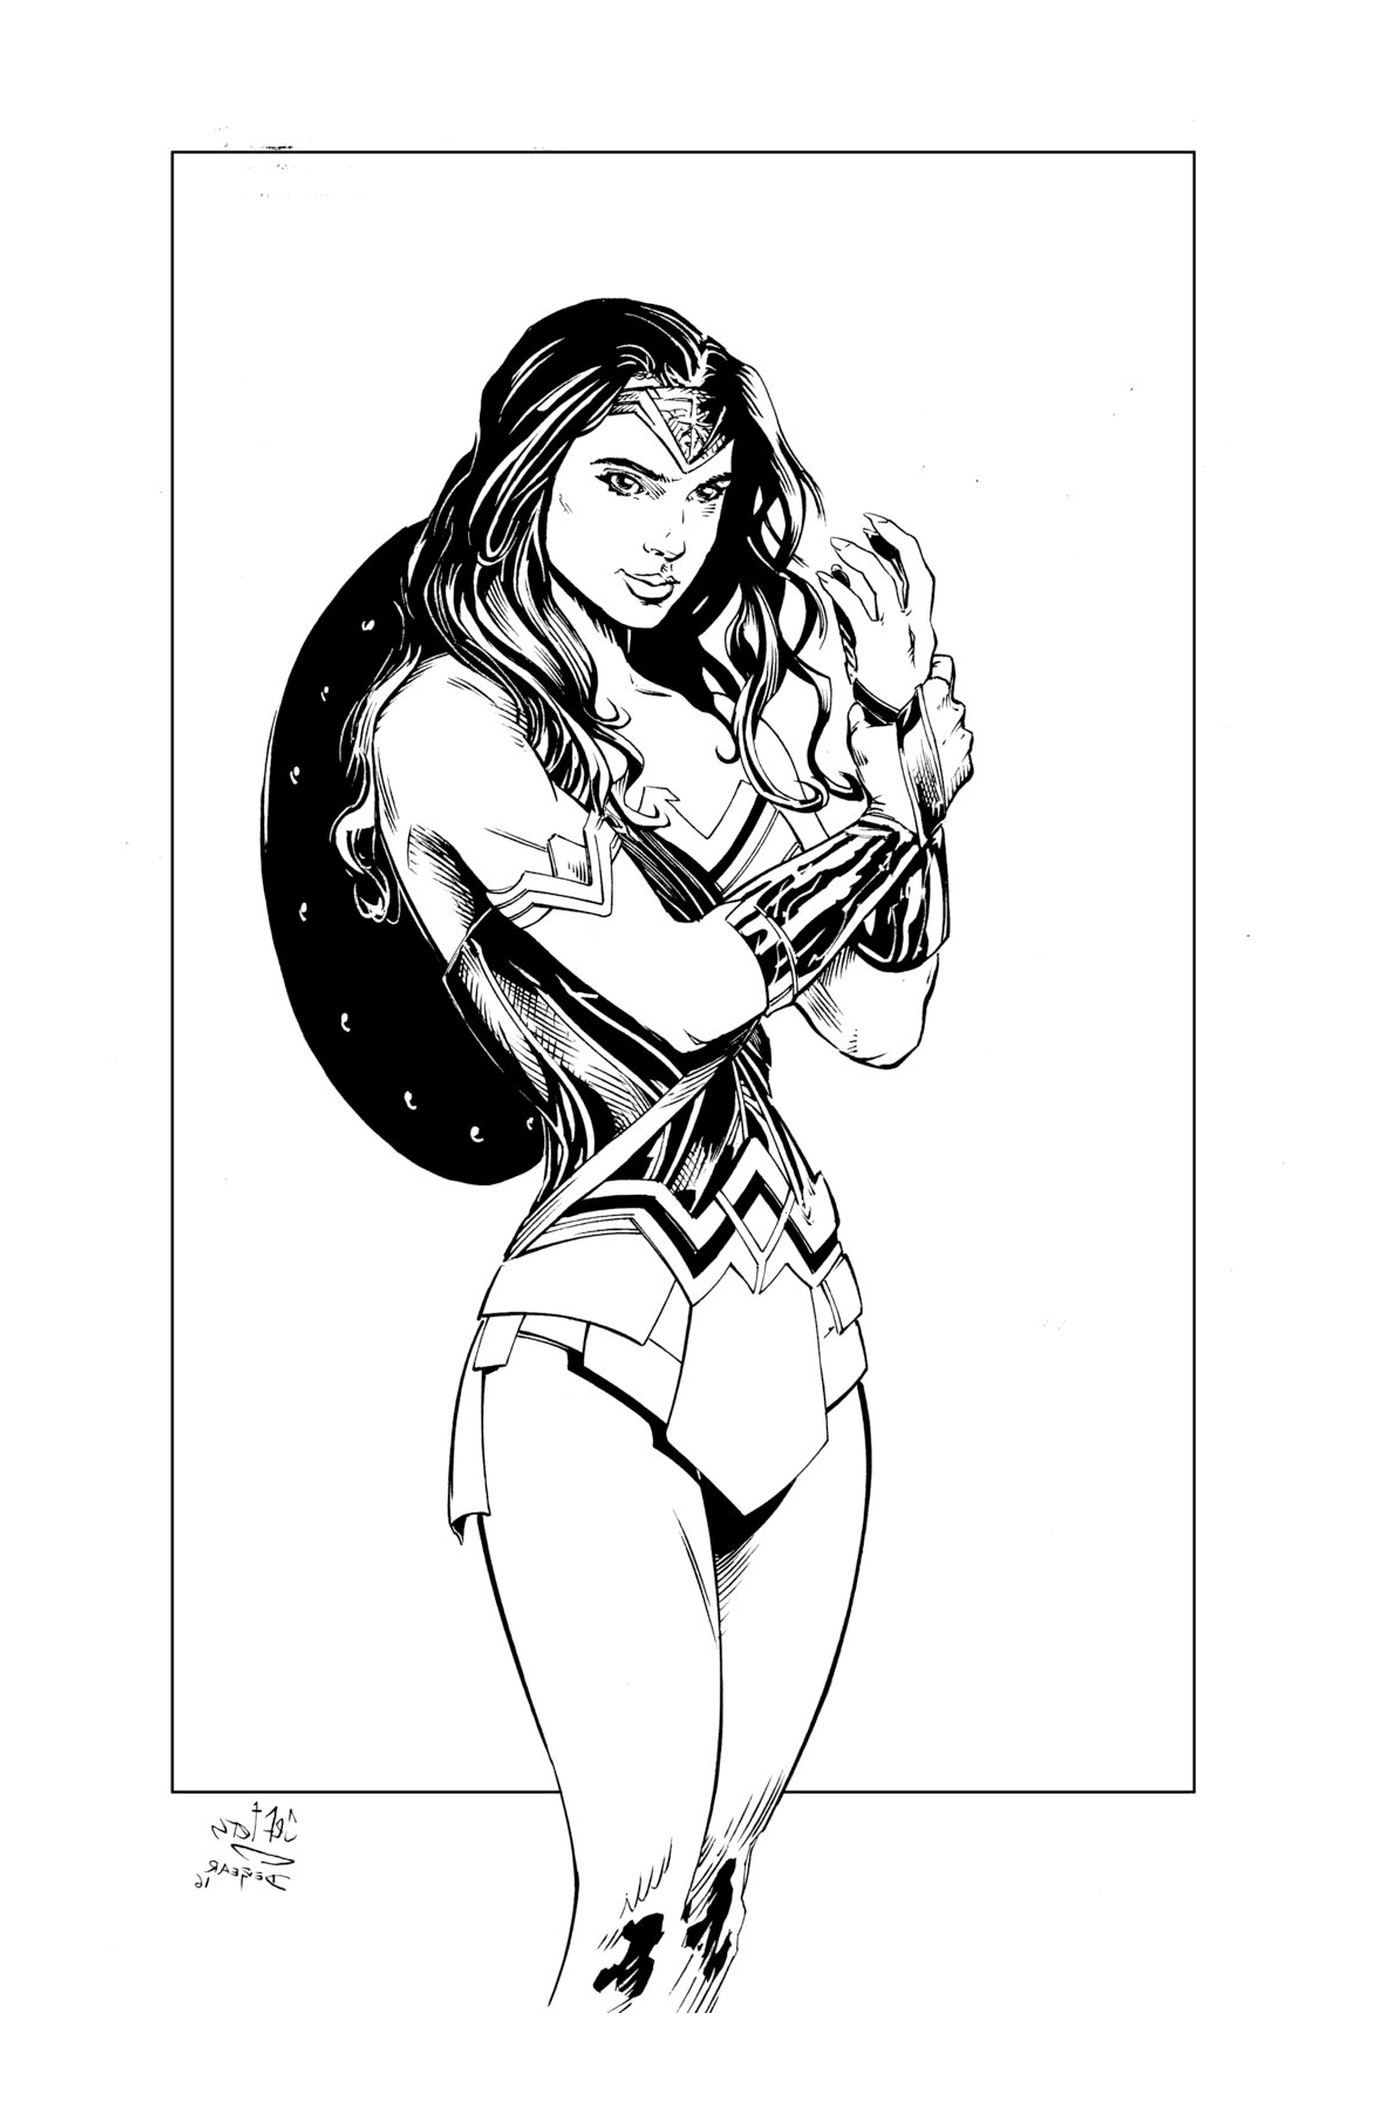  Wonder Woman in ink by Devgear 